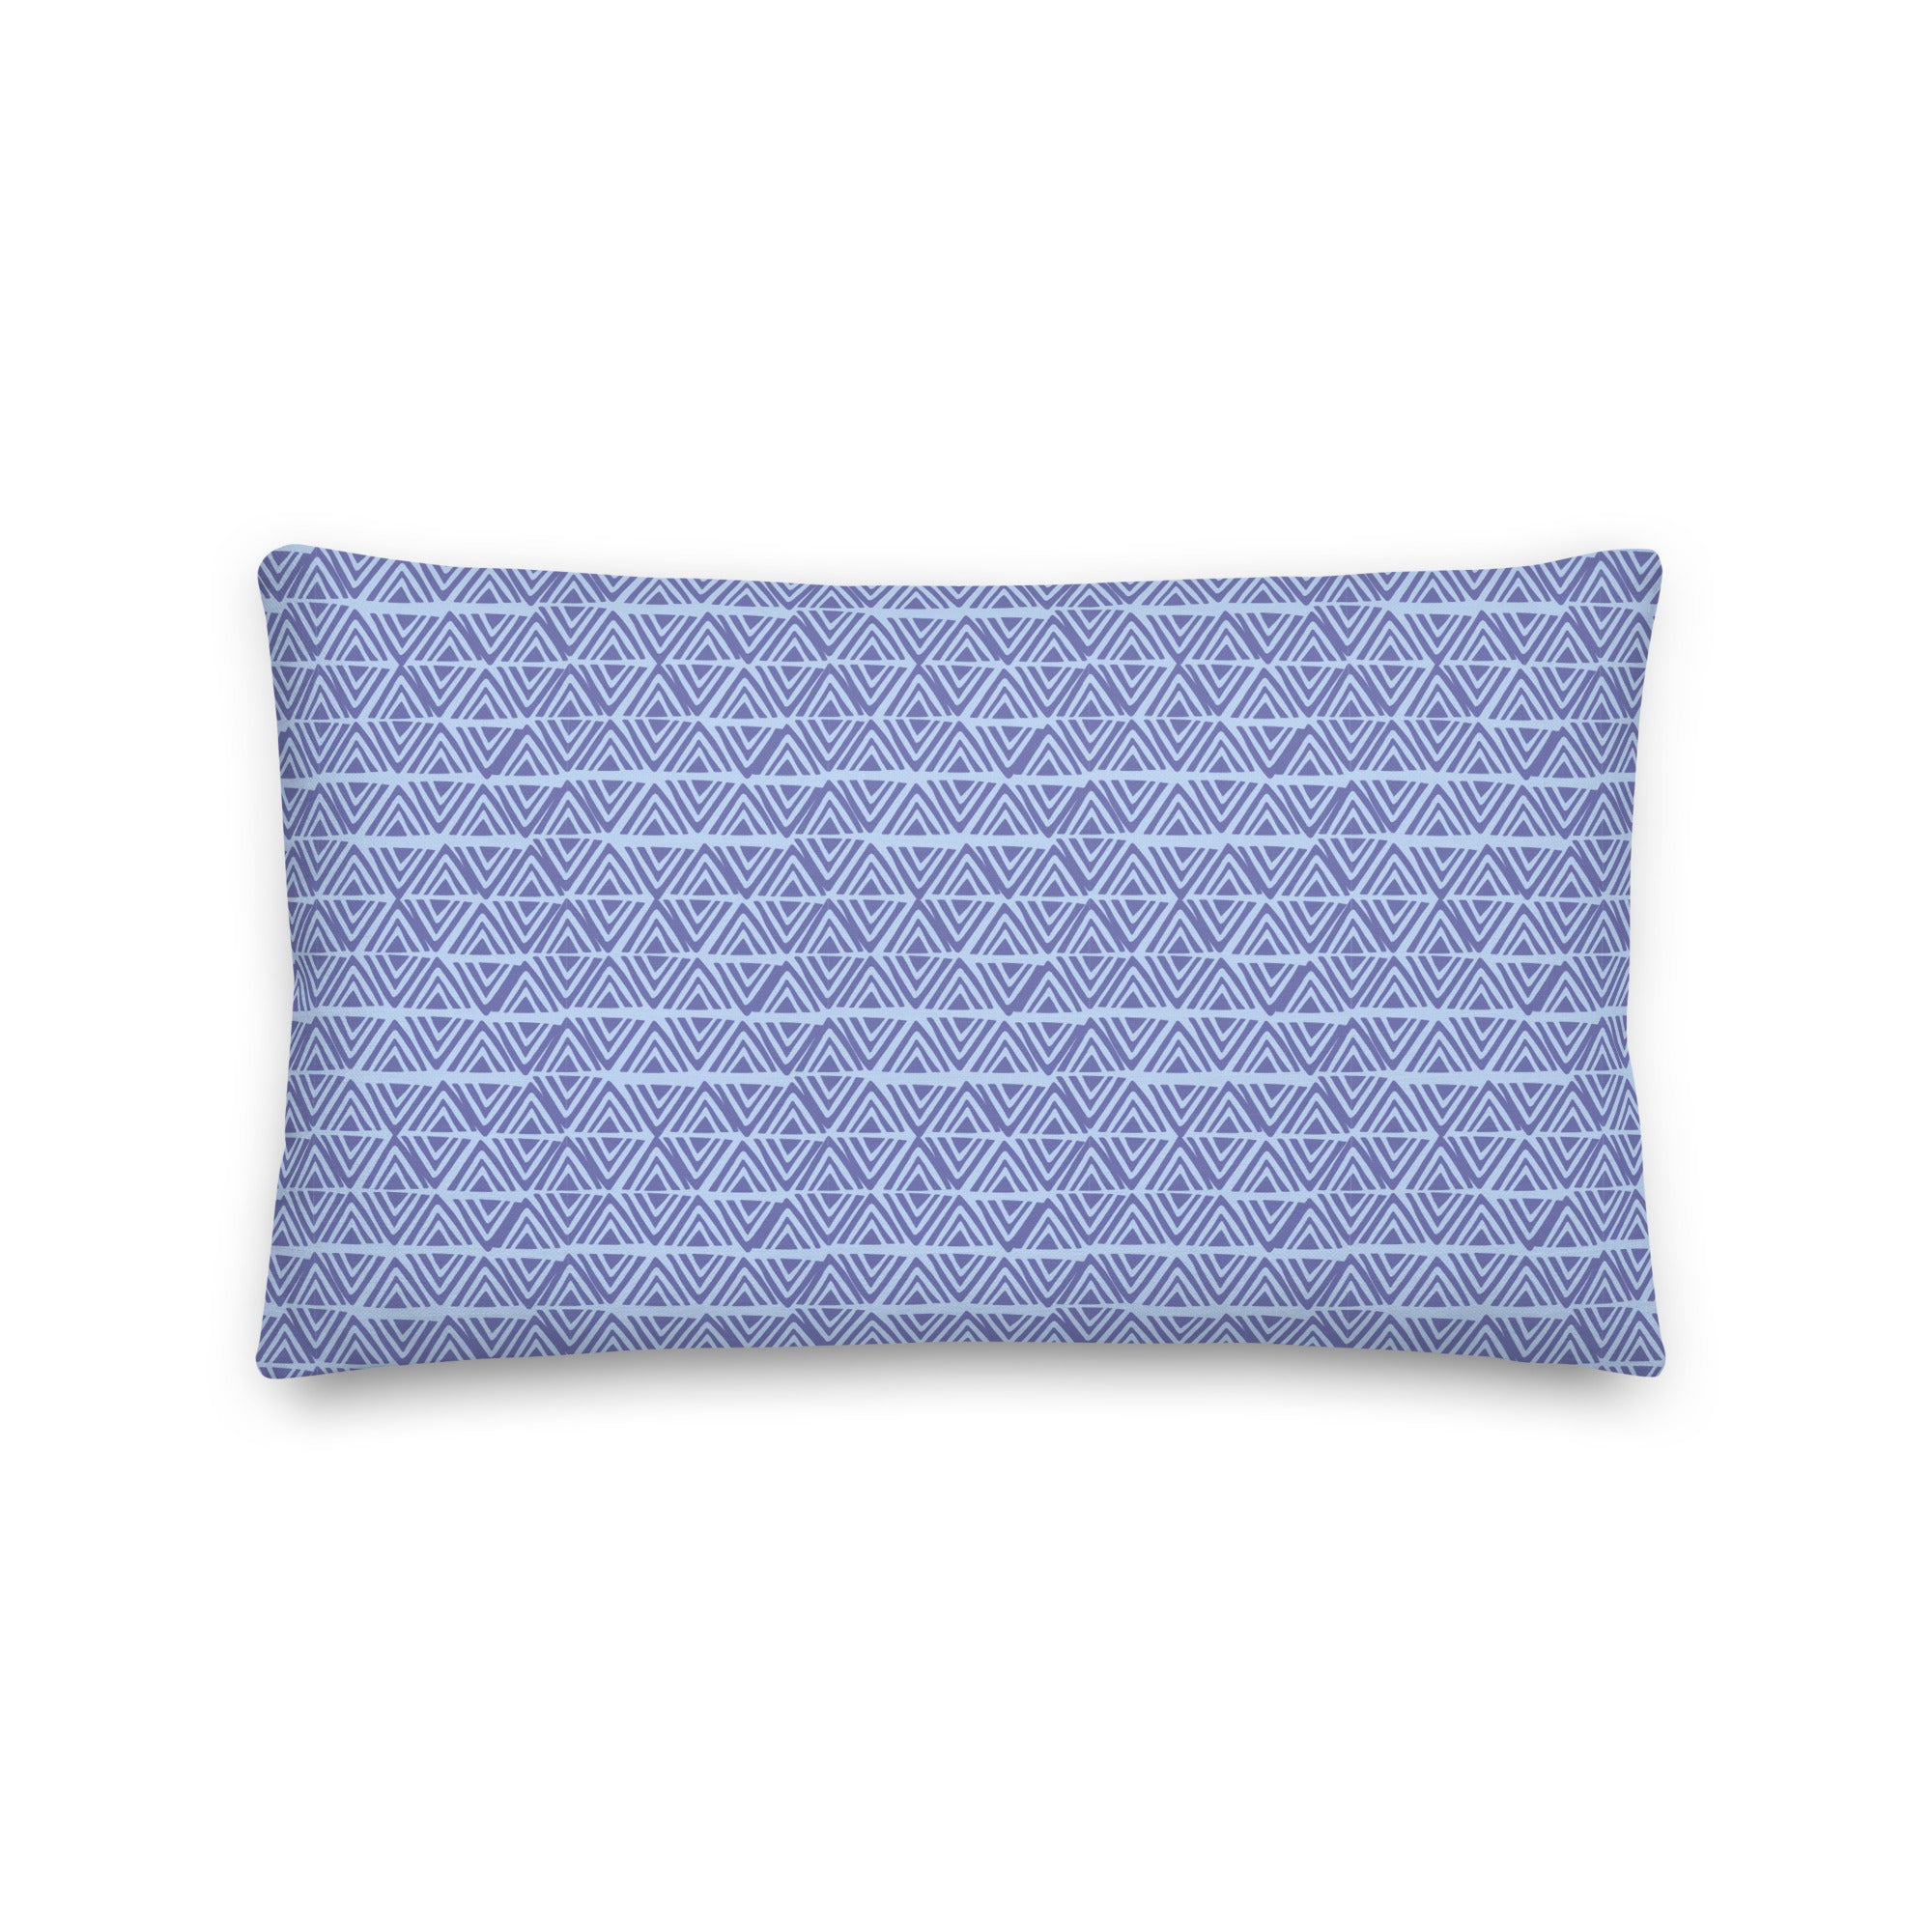 SAGE Color Premium Pillow